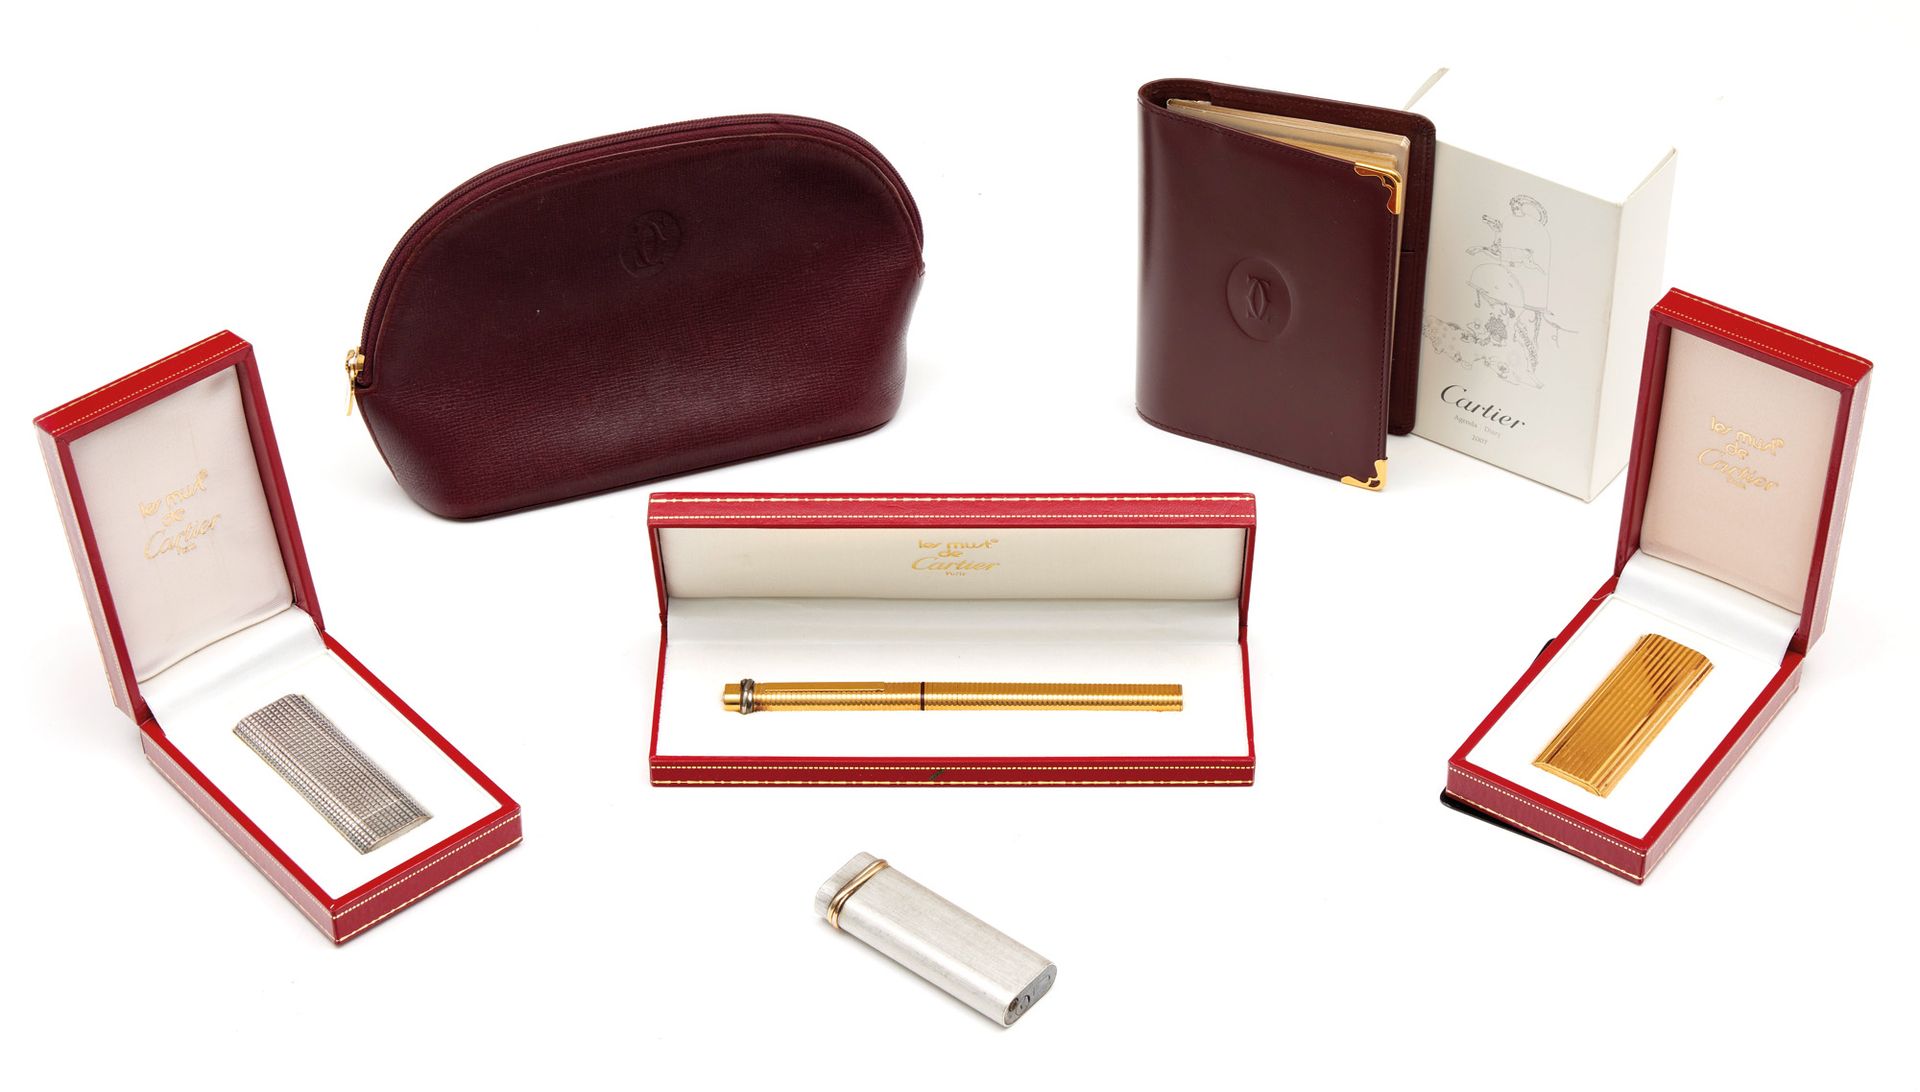 CARTIER 卡地亚

拍品包括一支钢笔、三个打火机、一个箱子和一本日记本